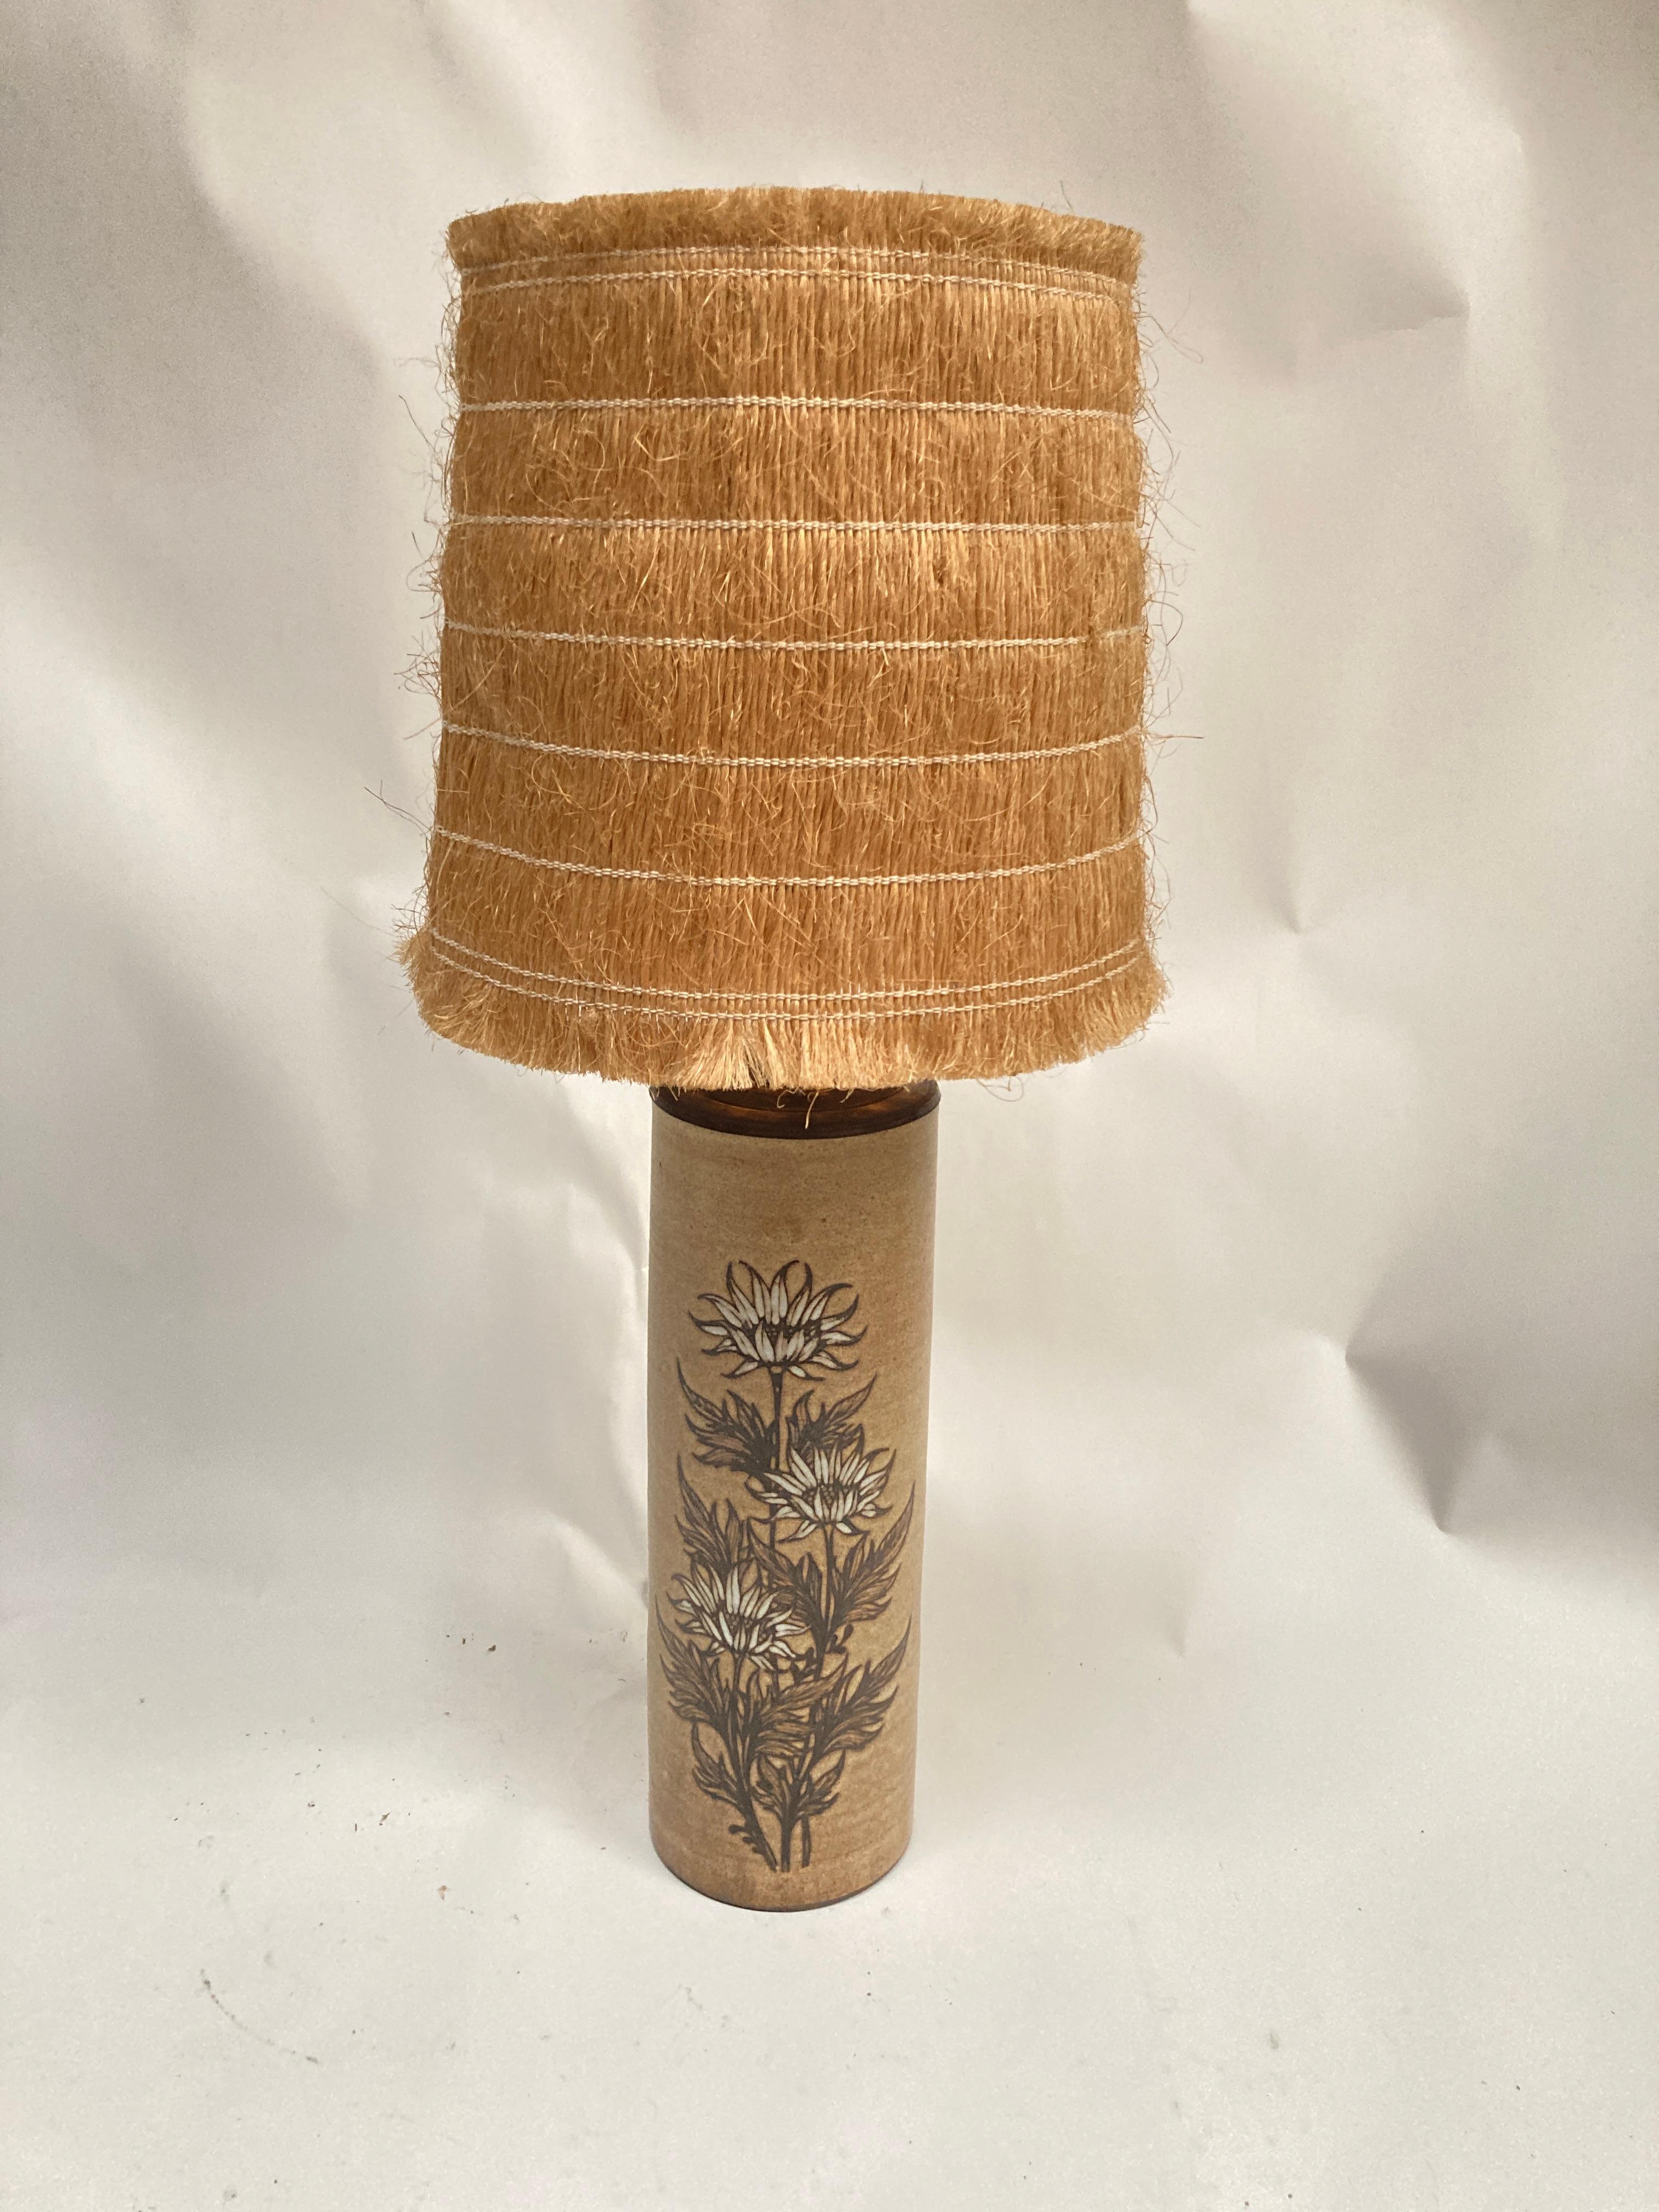 Sehr schöne, einzigartige Keramiklampe mit Blumendekoration.
Unterzeichnet Franken Mateo
Handgemacht
Maße ohne Schirm angegeben
Kein Schatten enthalten